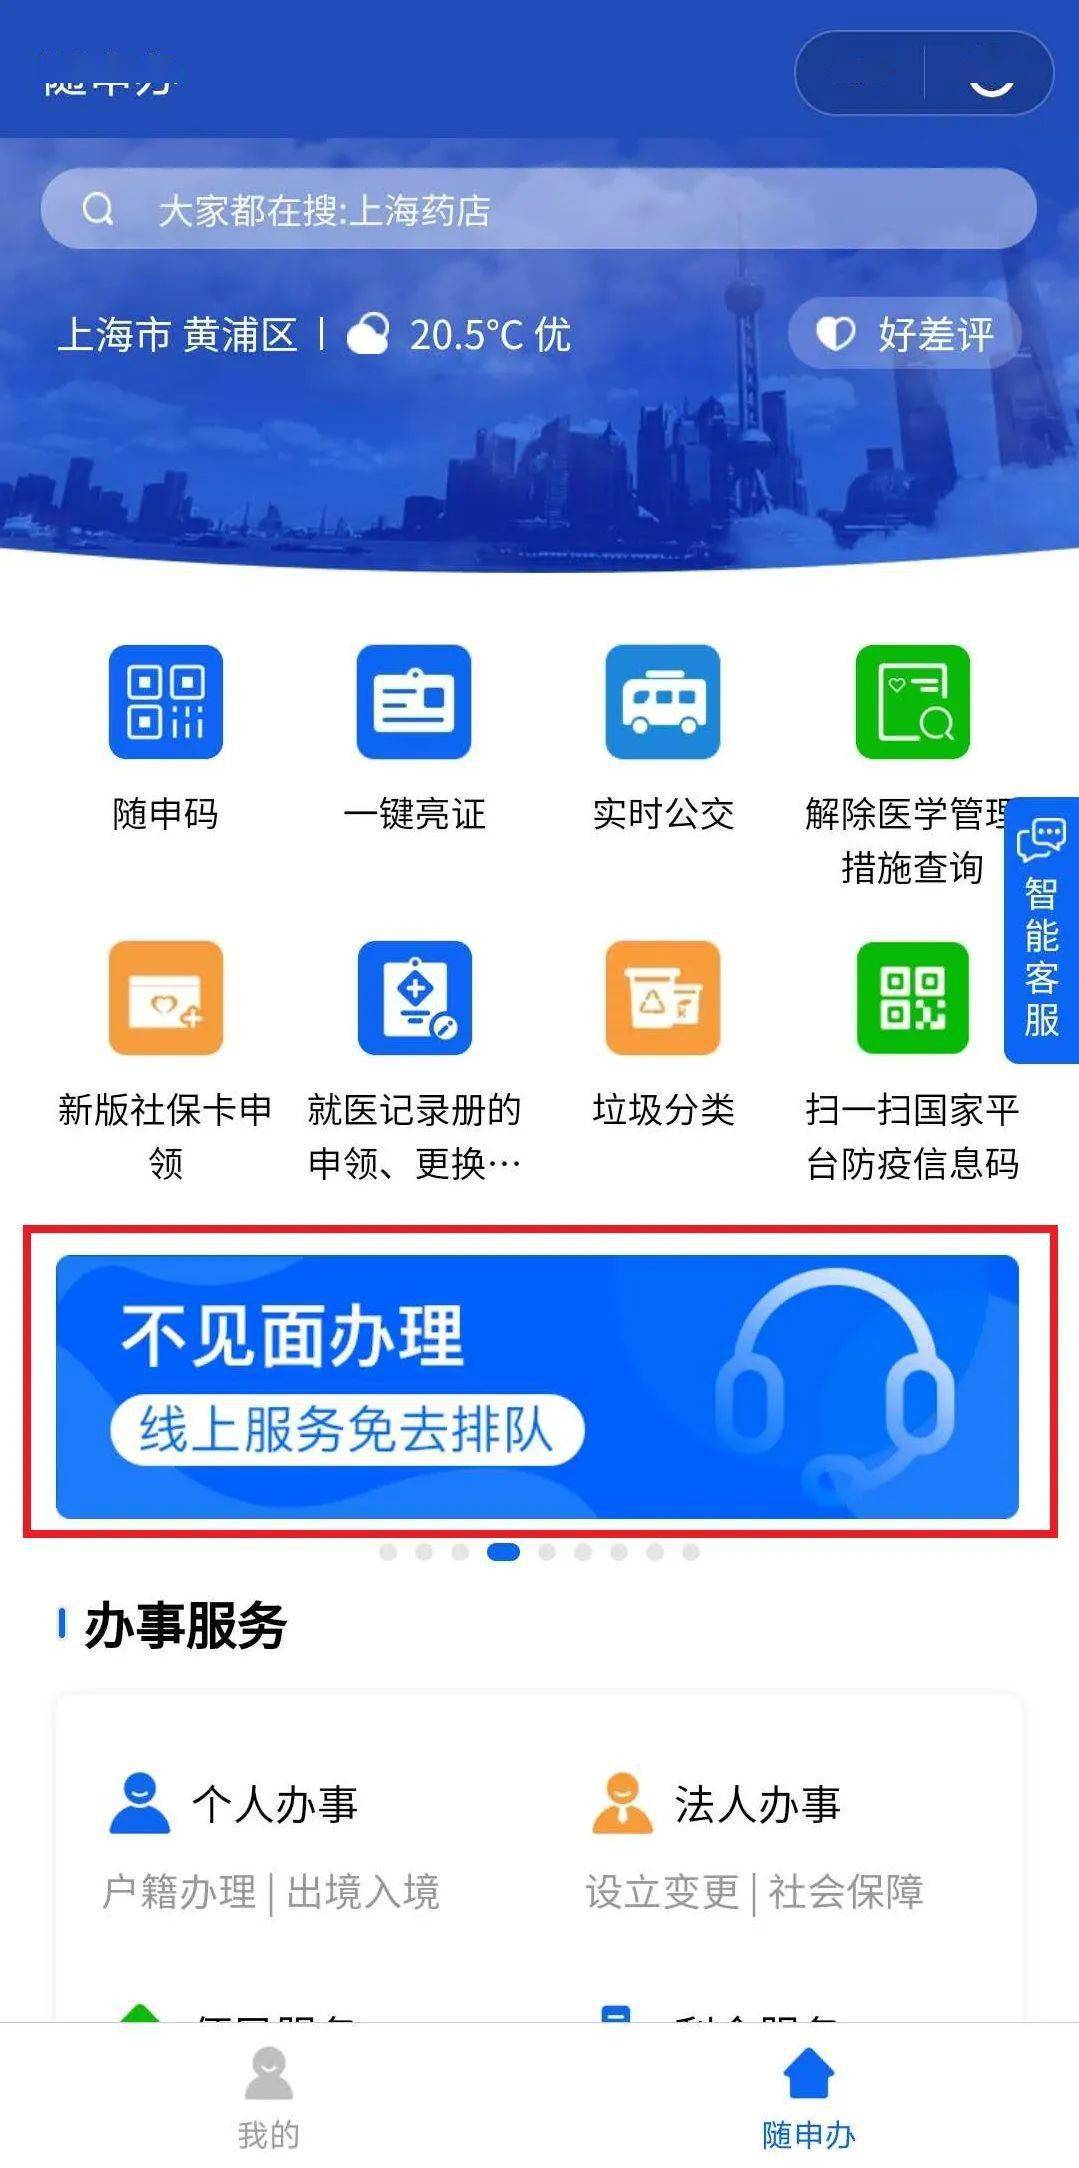 上海这18类民生档案手机就能查 快递送到家 附攻略